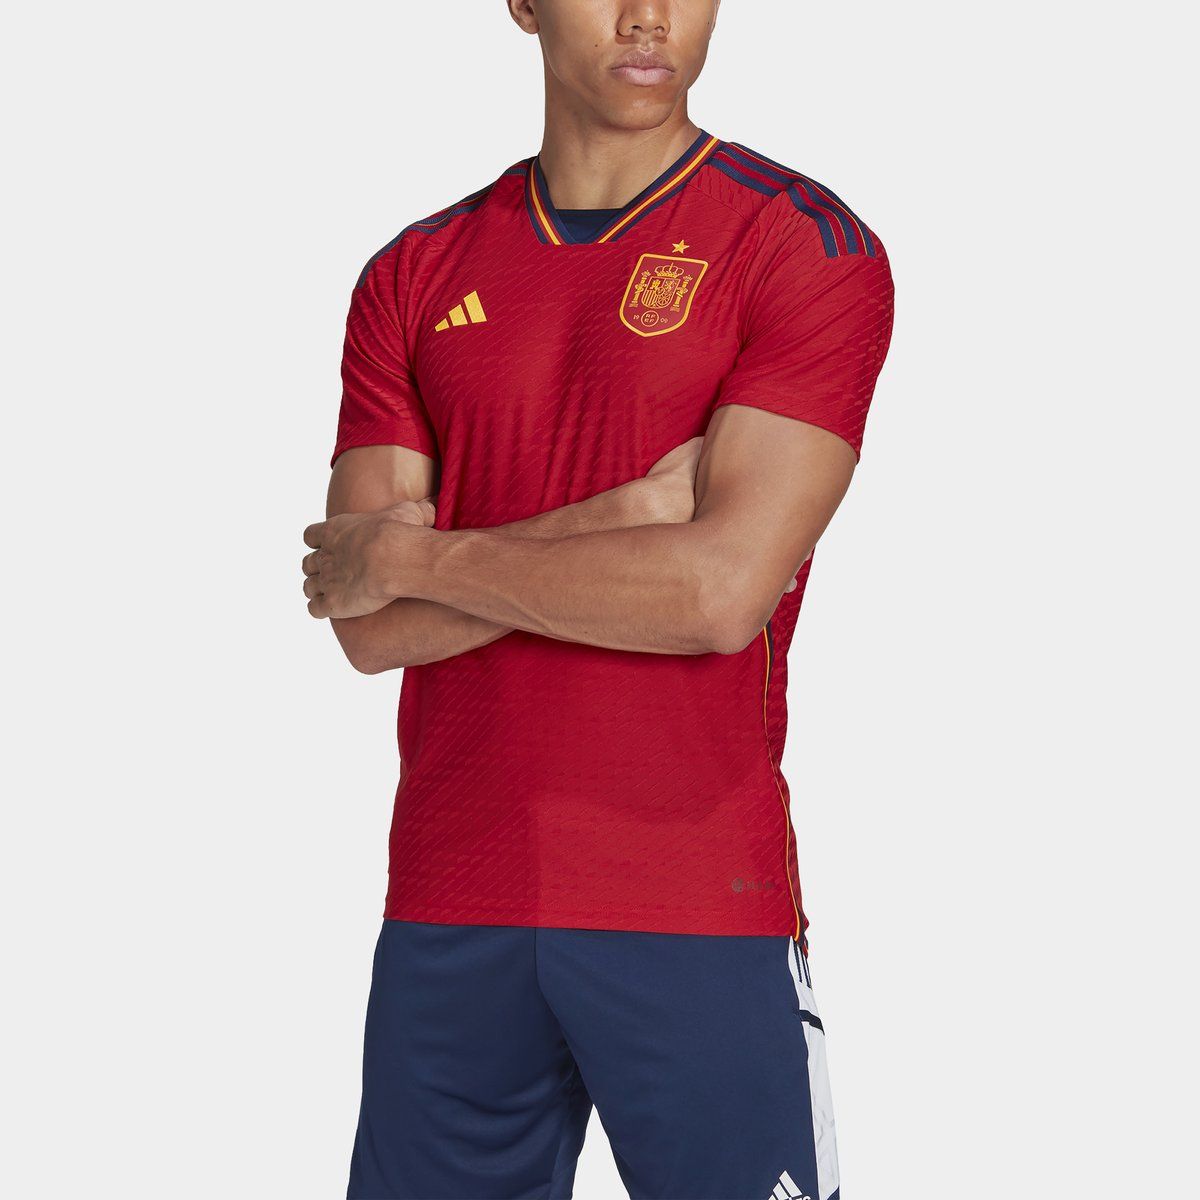 Spain Football Shirt & Kits - Lovell Soccer